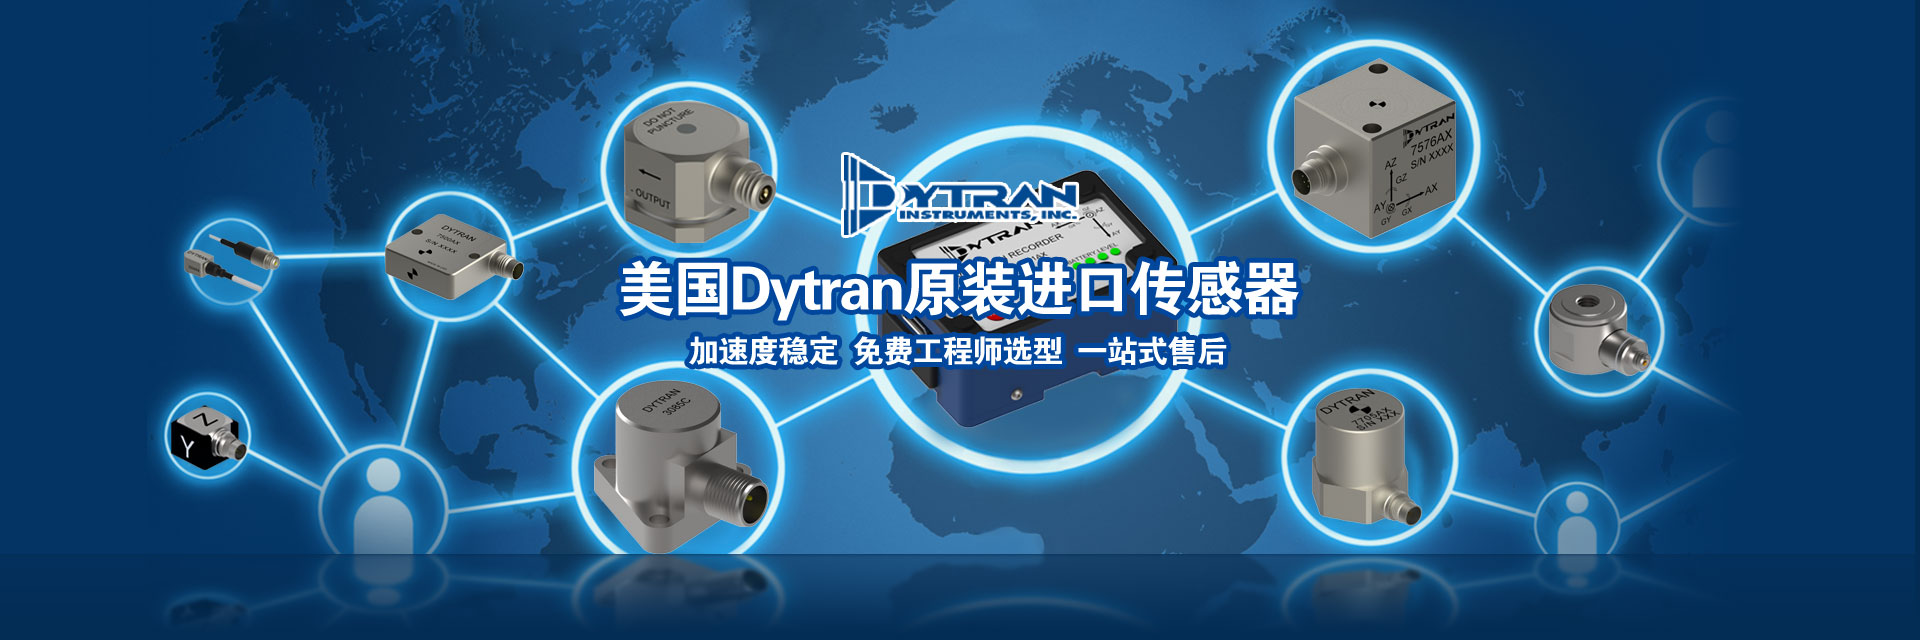 美国进口Dytran传感器